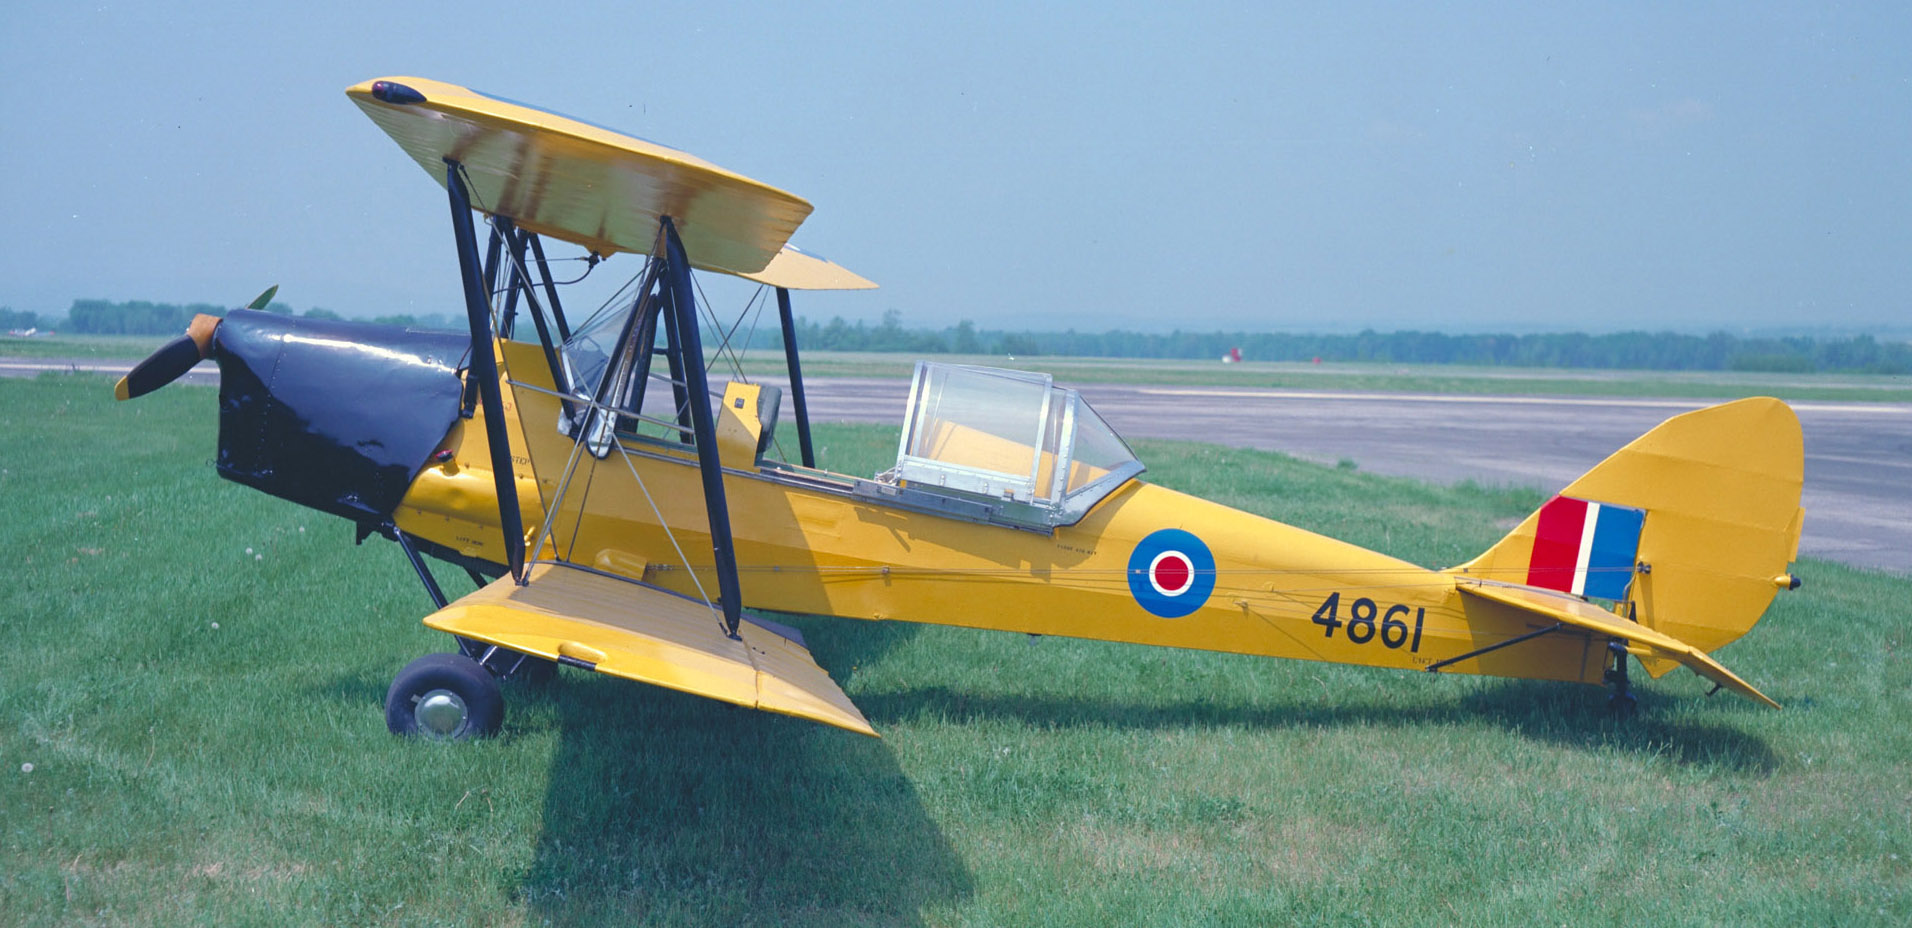 Le DH-82C Tiger Moth, à bord duquel des milliers de pilotes du Commonwealth ont suivi leur formation, s’est révélé un avion vital au Programme d’entraînement aérien du Commonwealth britannique. Plus de 1 500 Tiger Moth construits par de Havilland, à Toronto, ont servi dans les écoles élémentaires de pilotage. Parmi les modifications canadiennes apportées à l’avion figurent des montures pour skis et flotteurs, une verrière coulissante, un poste de pilotage chauffé, un nouveau capot, un moteur plus puissant et une roue de queue. PHOTO : Archives du MDN, PCN-4631  